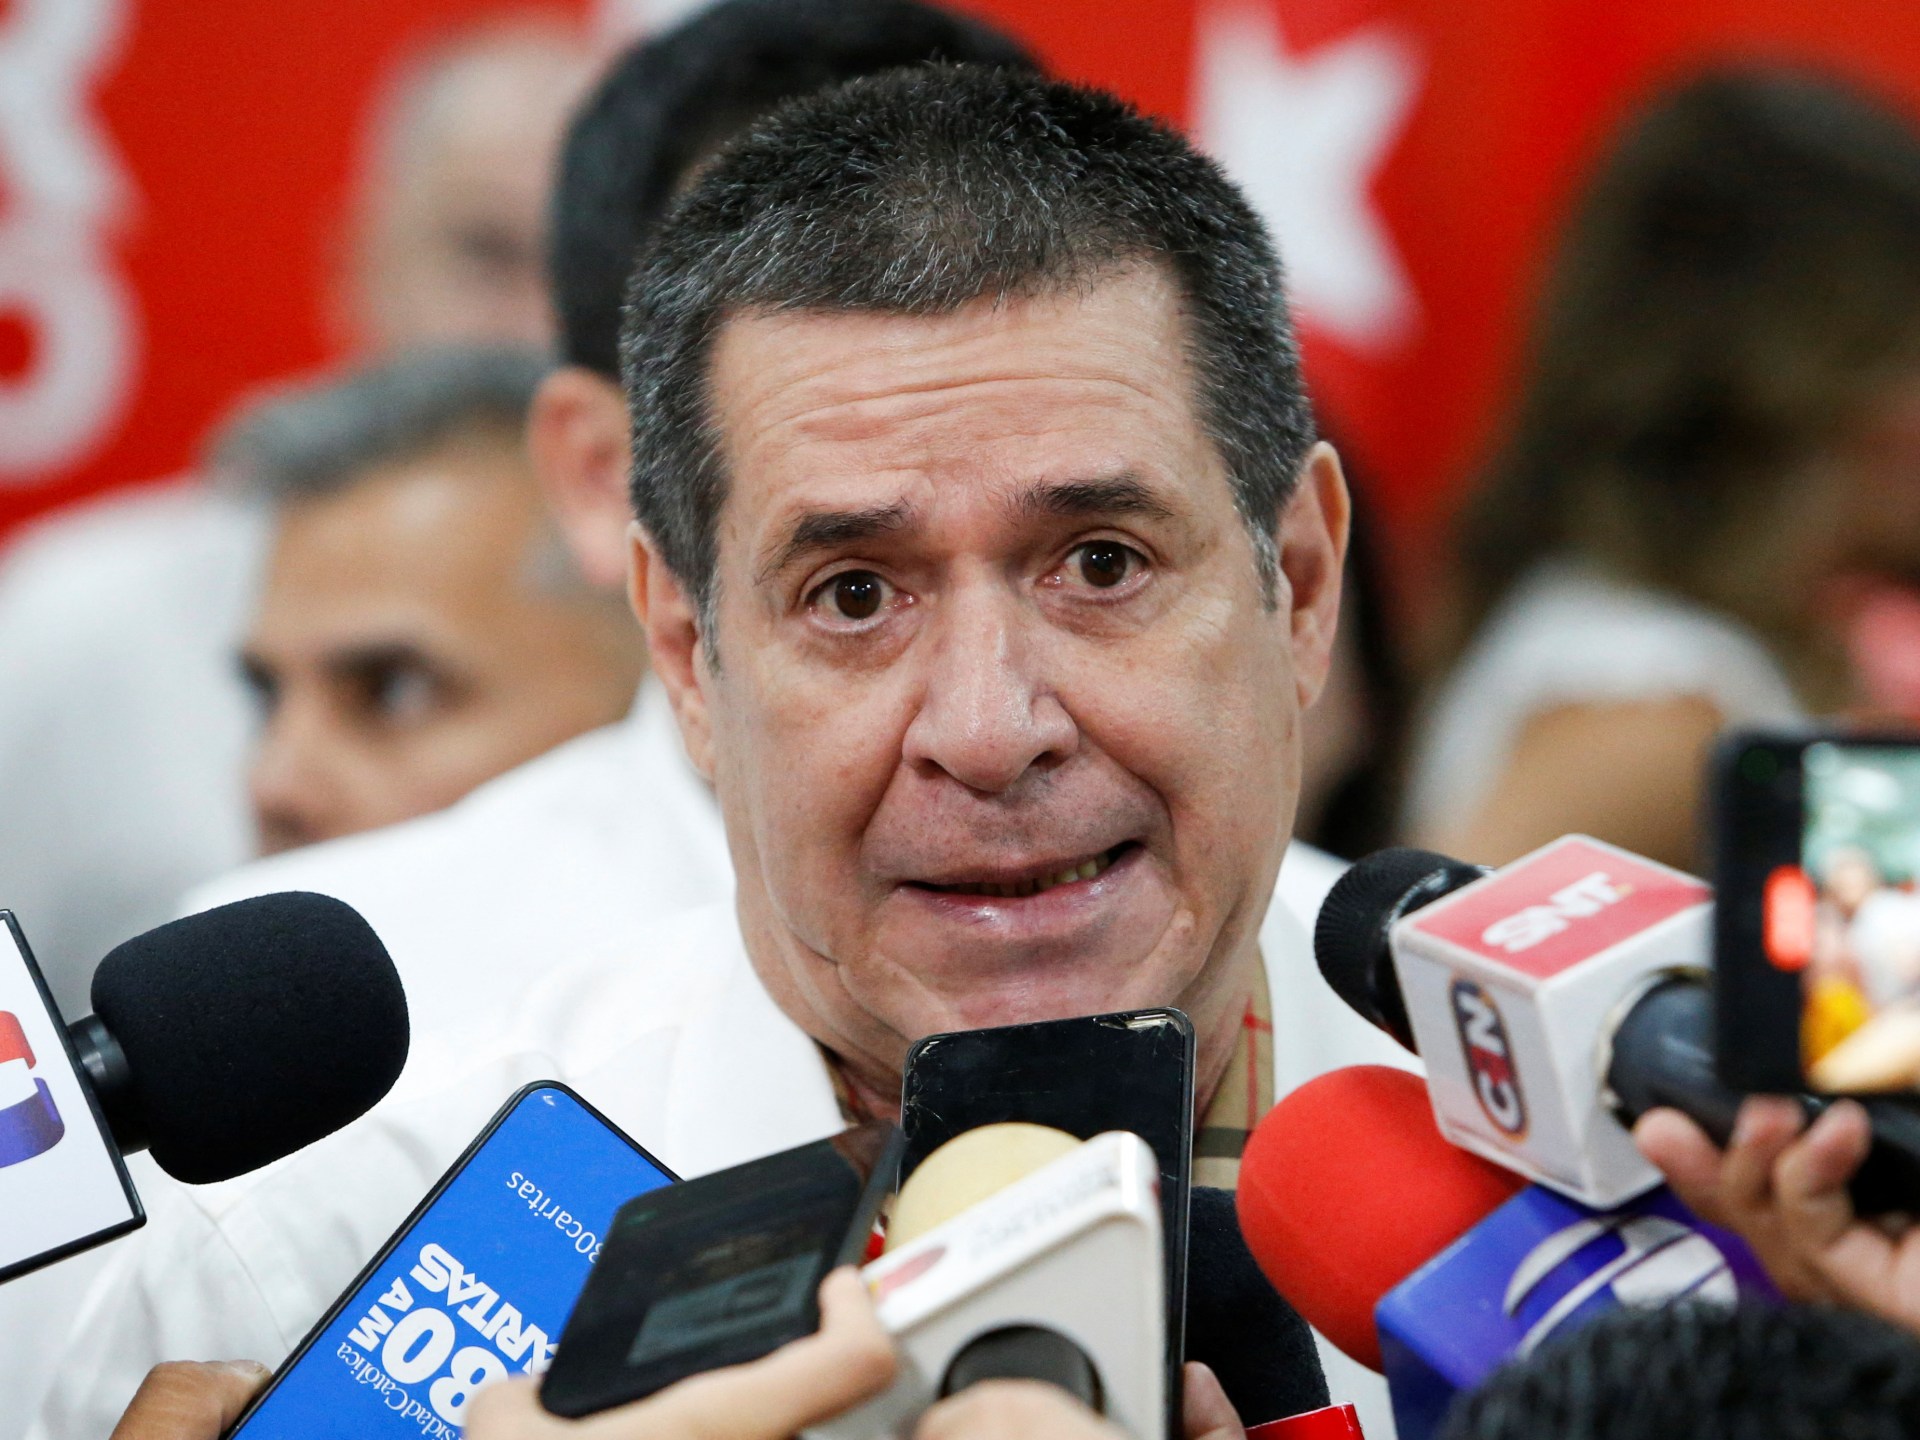 AS menuduh politisi top Paraguay melakukan korupsi, mendorong penyelidikan |  Berita Korupsi